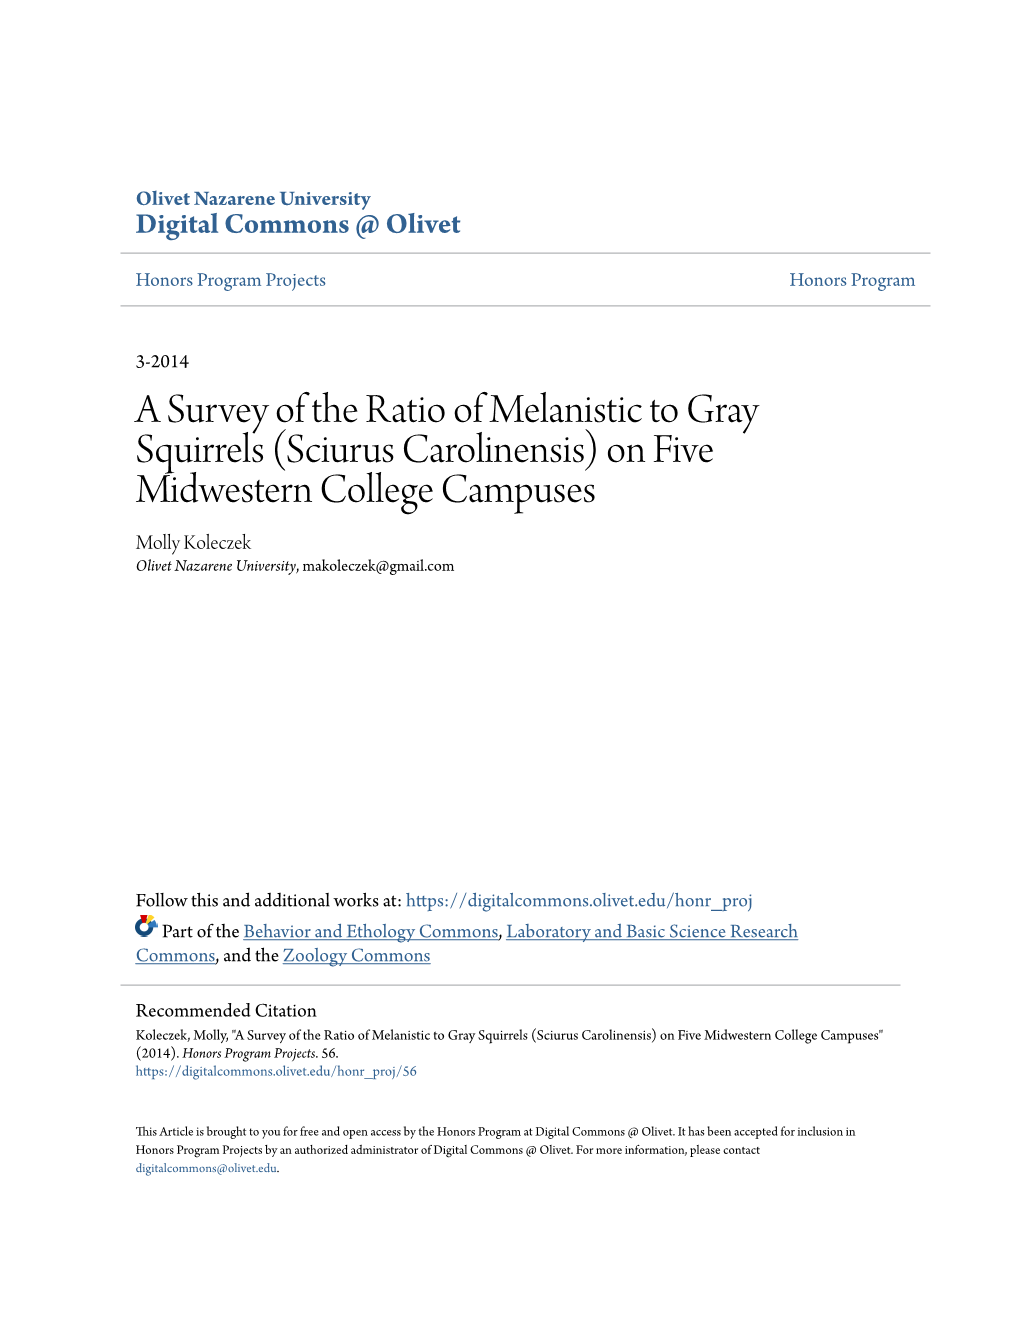 A Survey of the Ratio of Melanistic to Gray Squirrels (Sciurus Carolinensis)